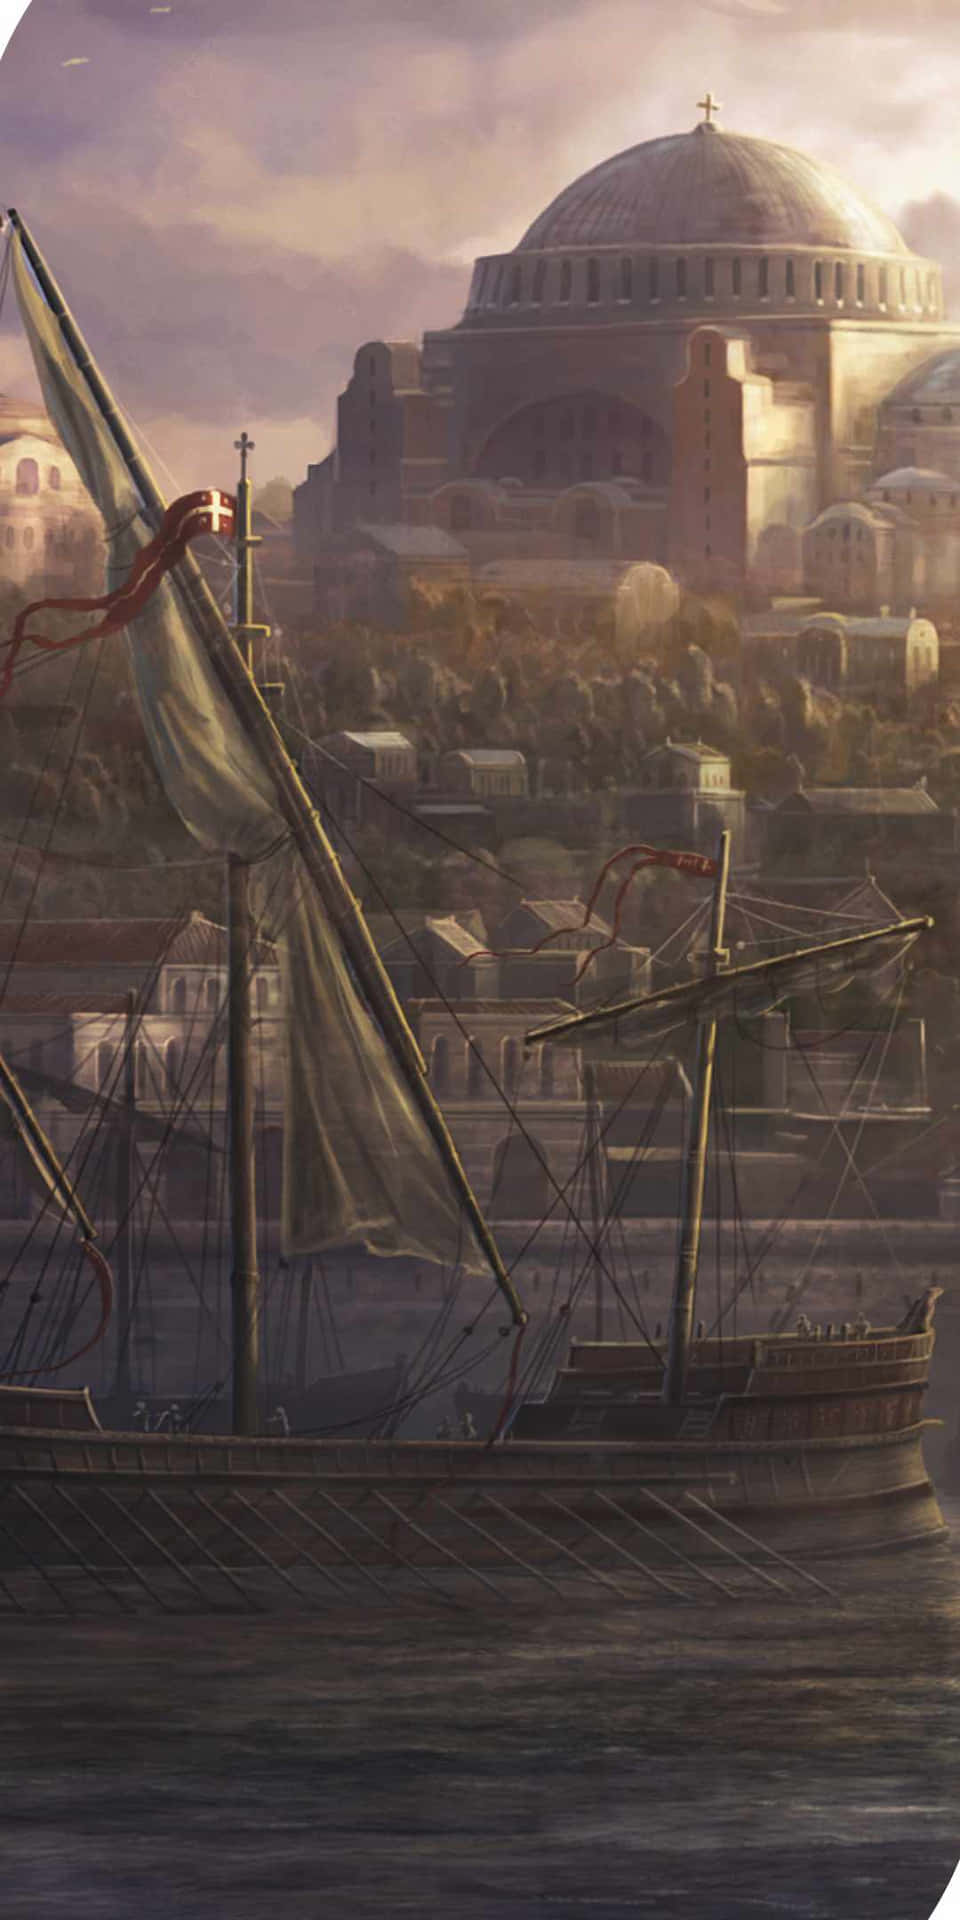 Pixel3 Bakgrundsbild Med Total War Attila Och Den Stora Staden Konstantinopel.